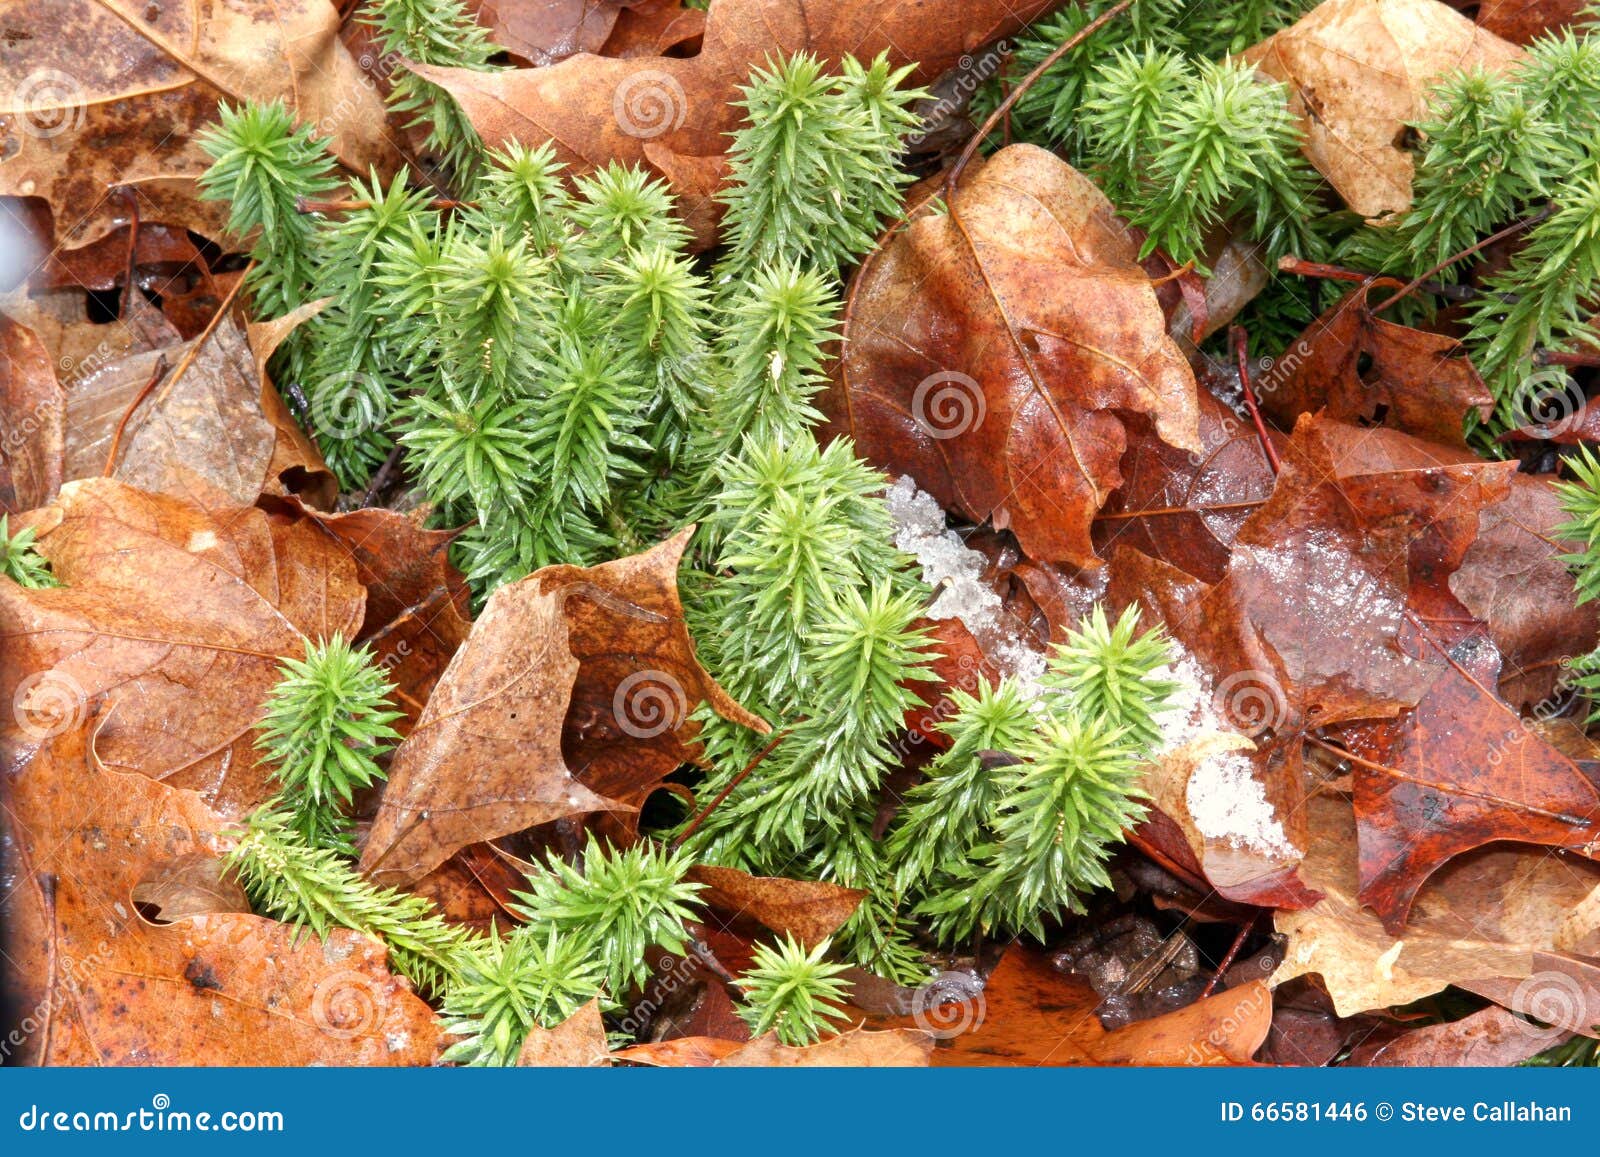 shining fir clubmoss, perennial evergreen on forest floor